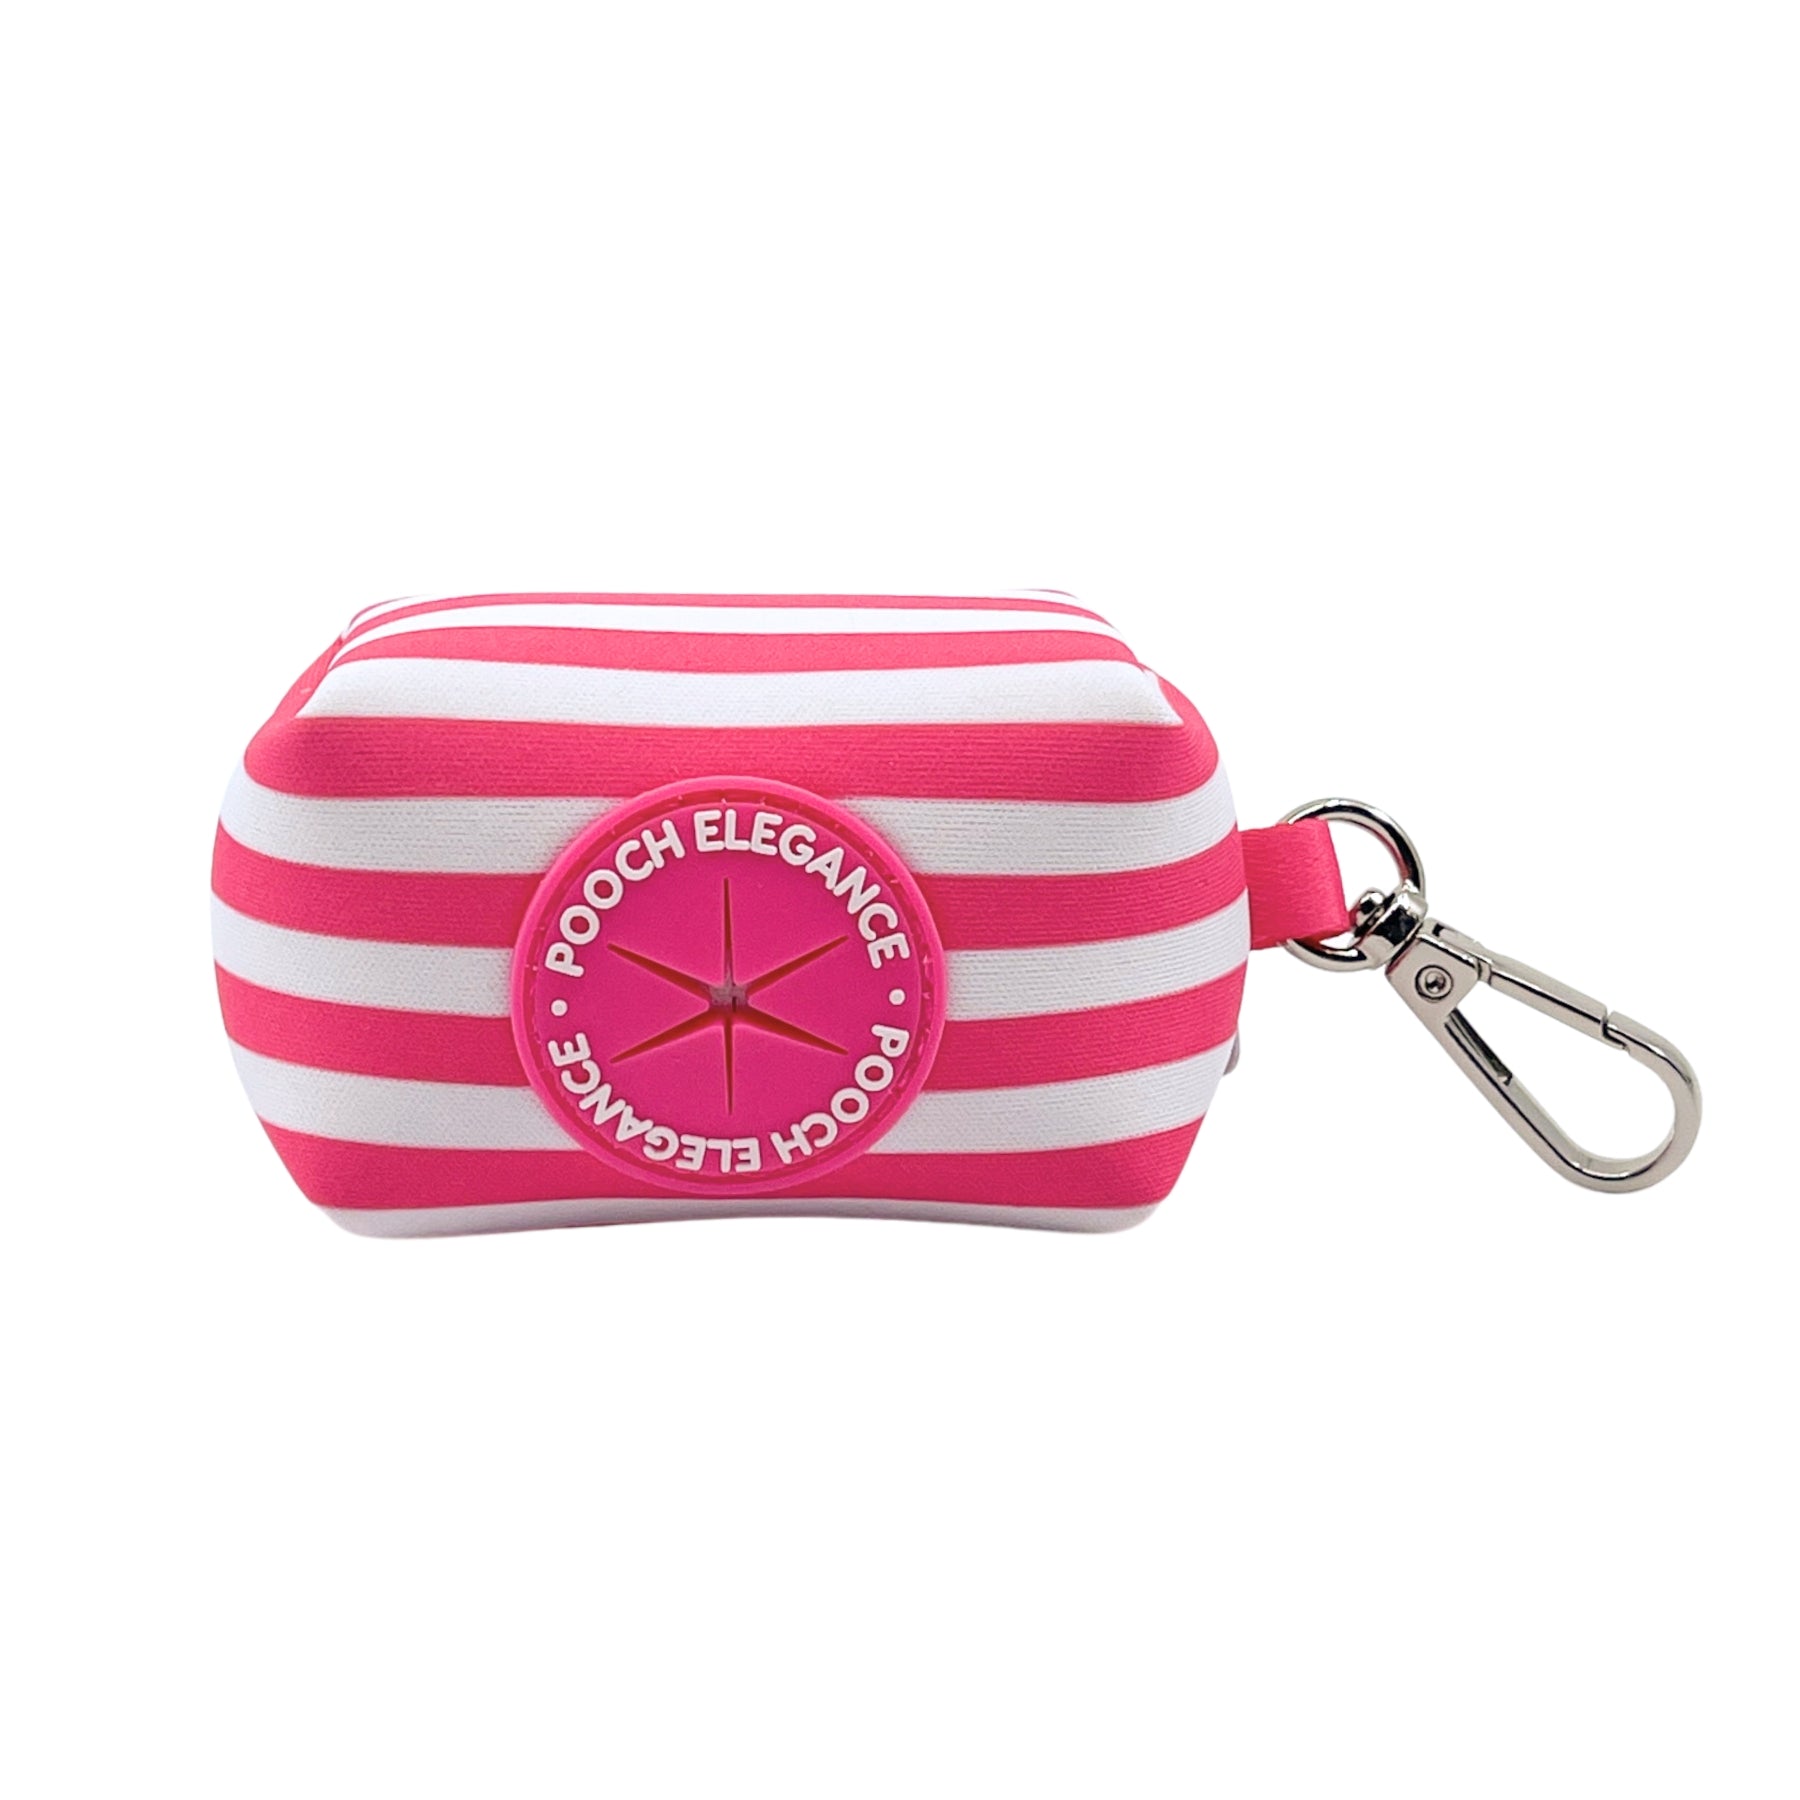 Carnival Stripe - Pink Waste Bag Holder